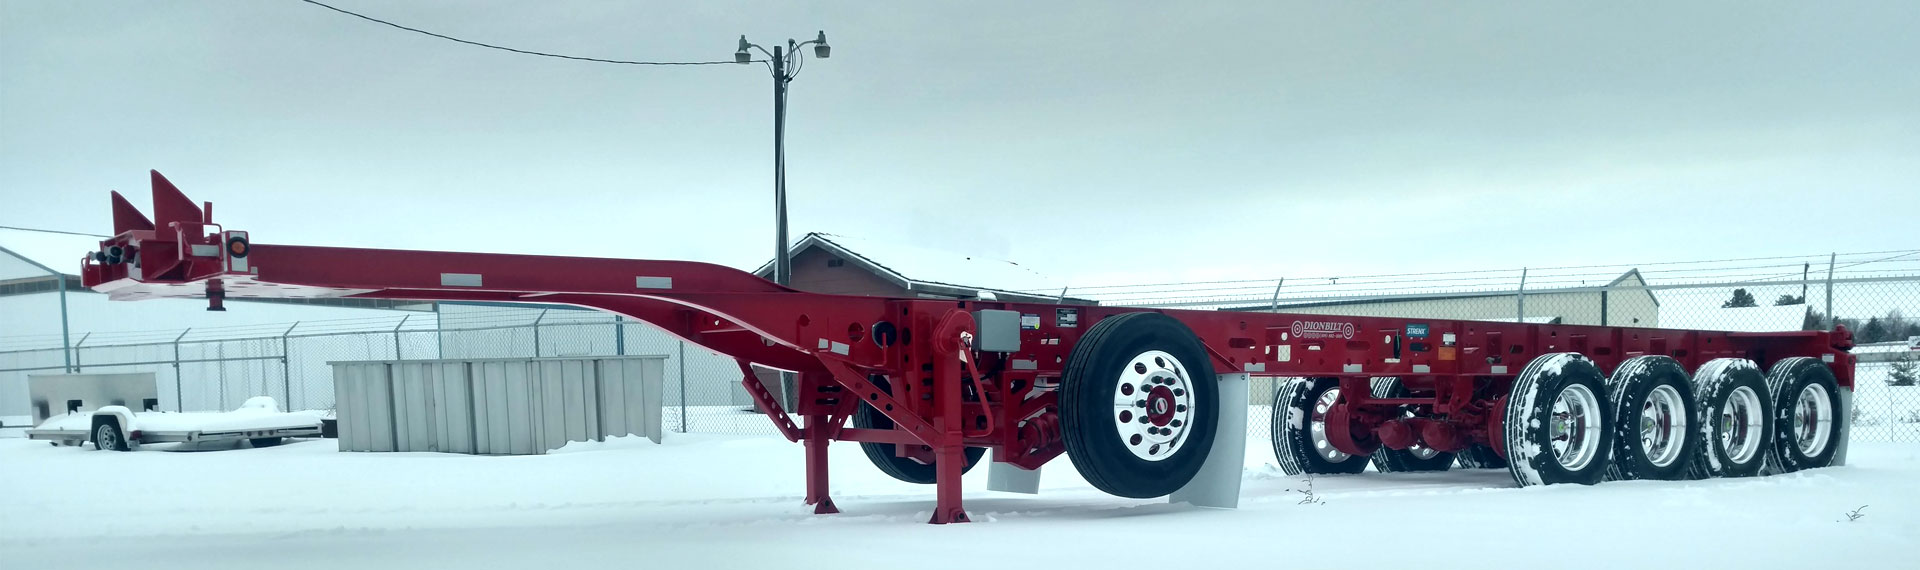 Chasis de un remolque largo y ligero fabricado con Strenx® 100 sobre terreno nevado